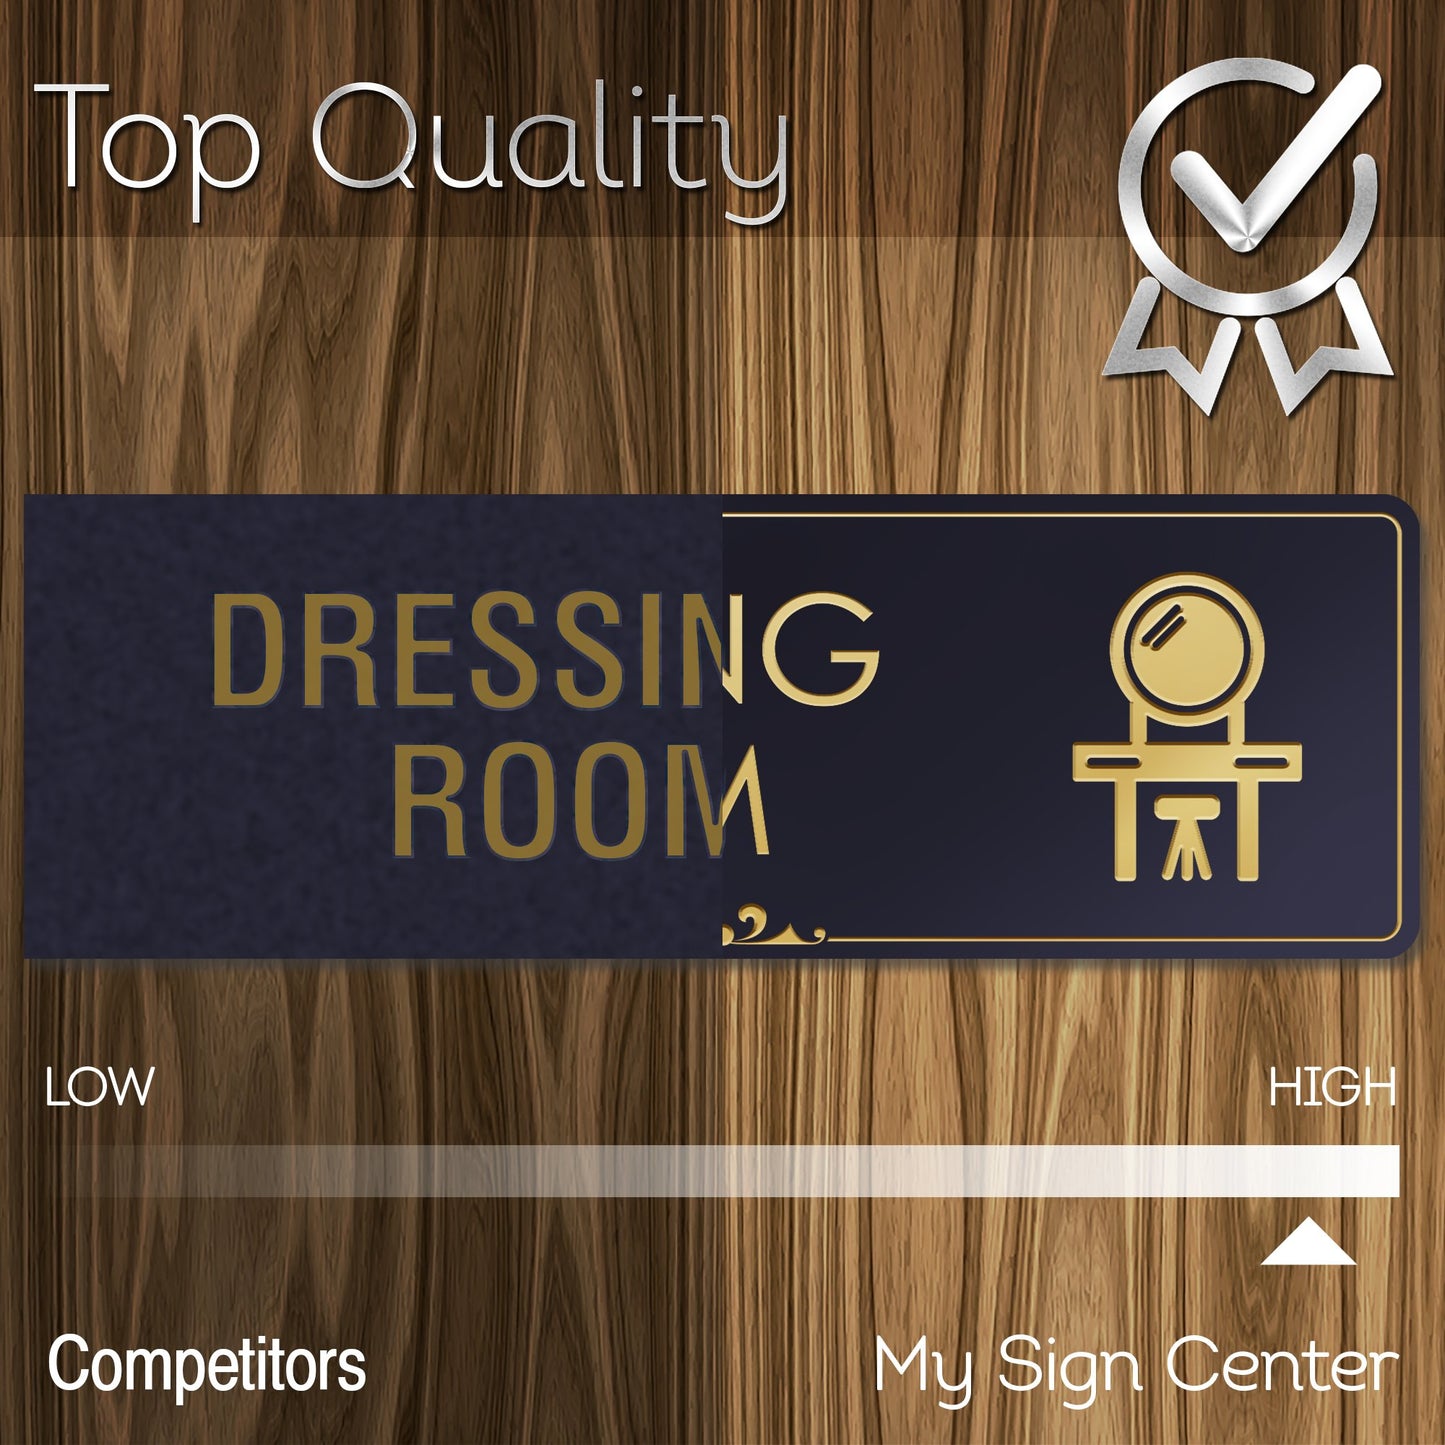 Dressing Room Sign Makeup Room Sign